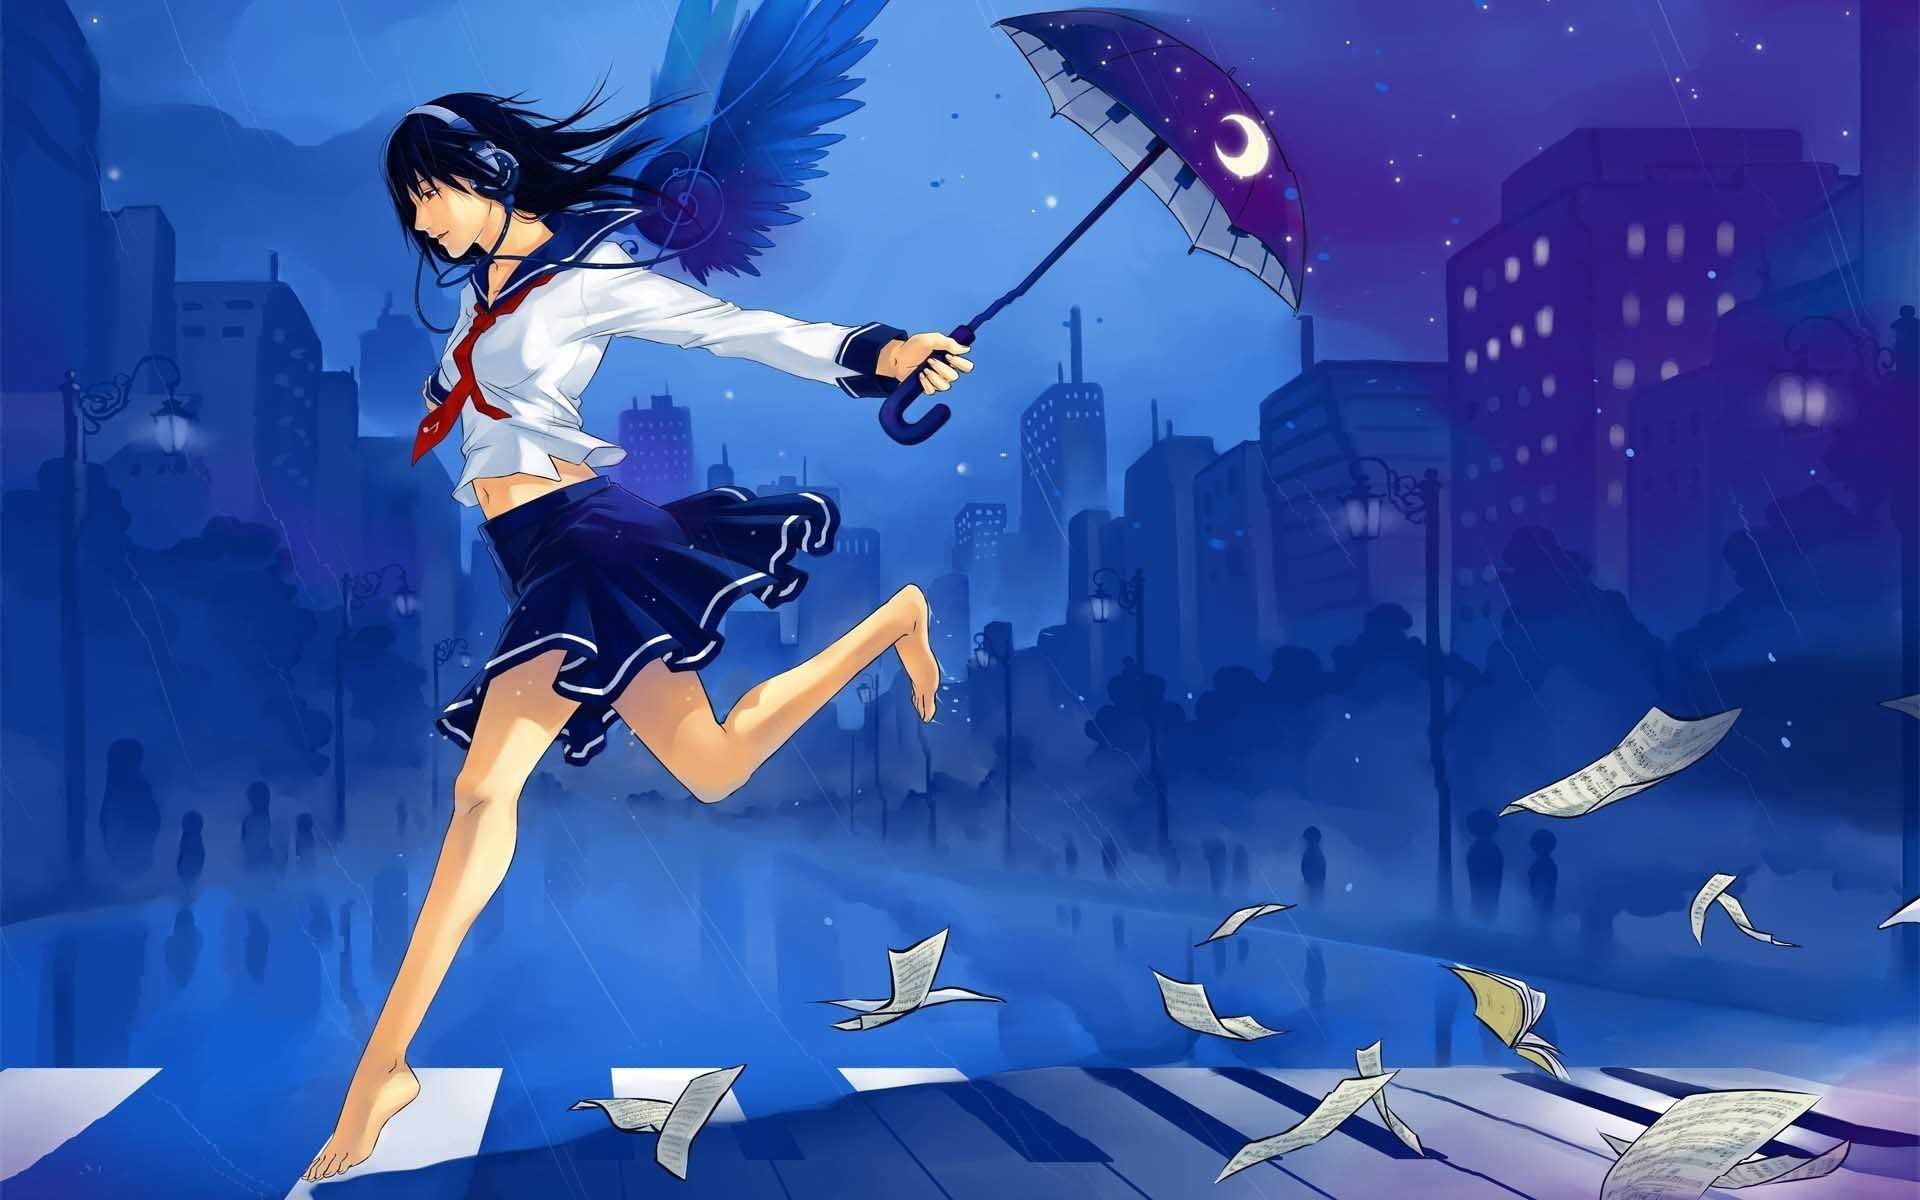 Anime Wallpaper Windows Girl 54 Images